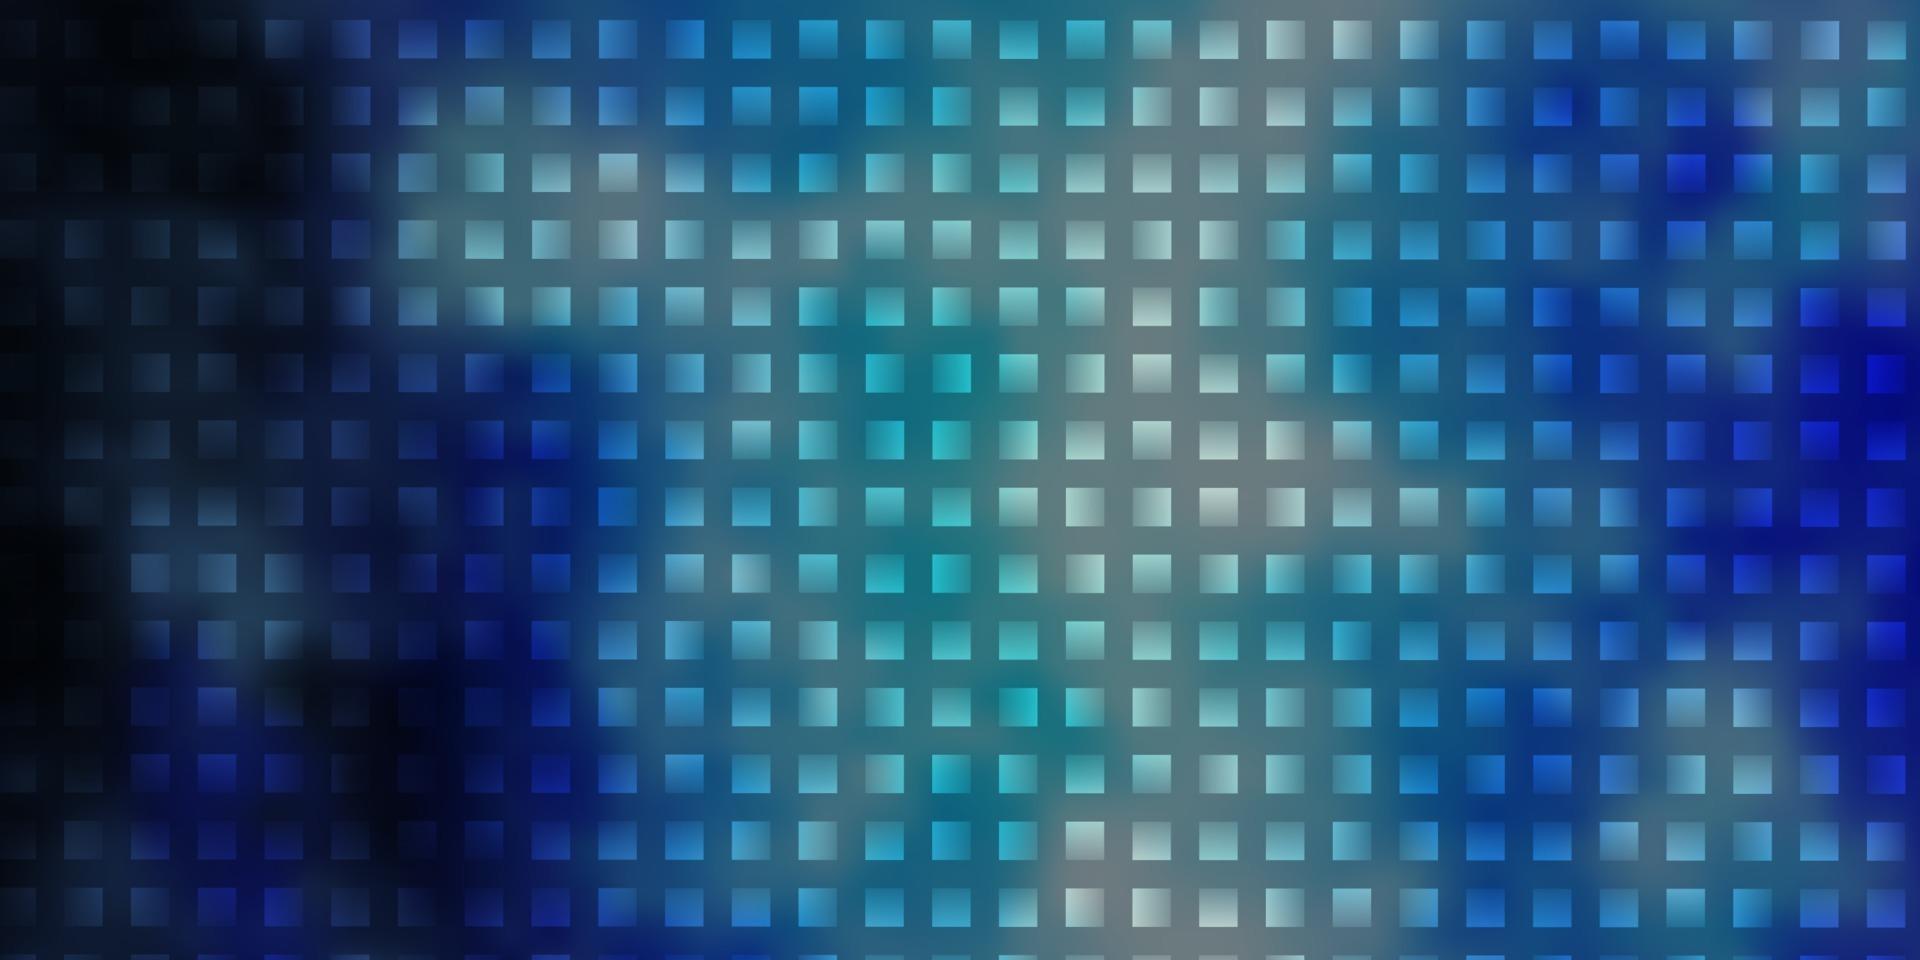 modèle vectoriel bleu clair dans un style carré.